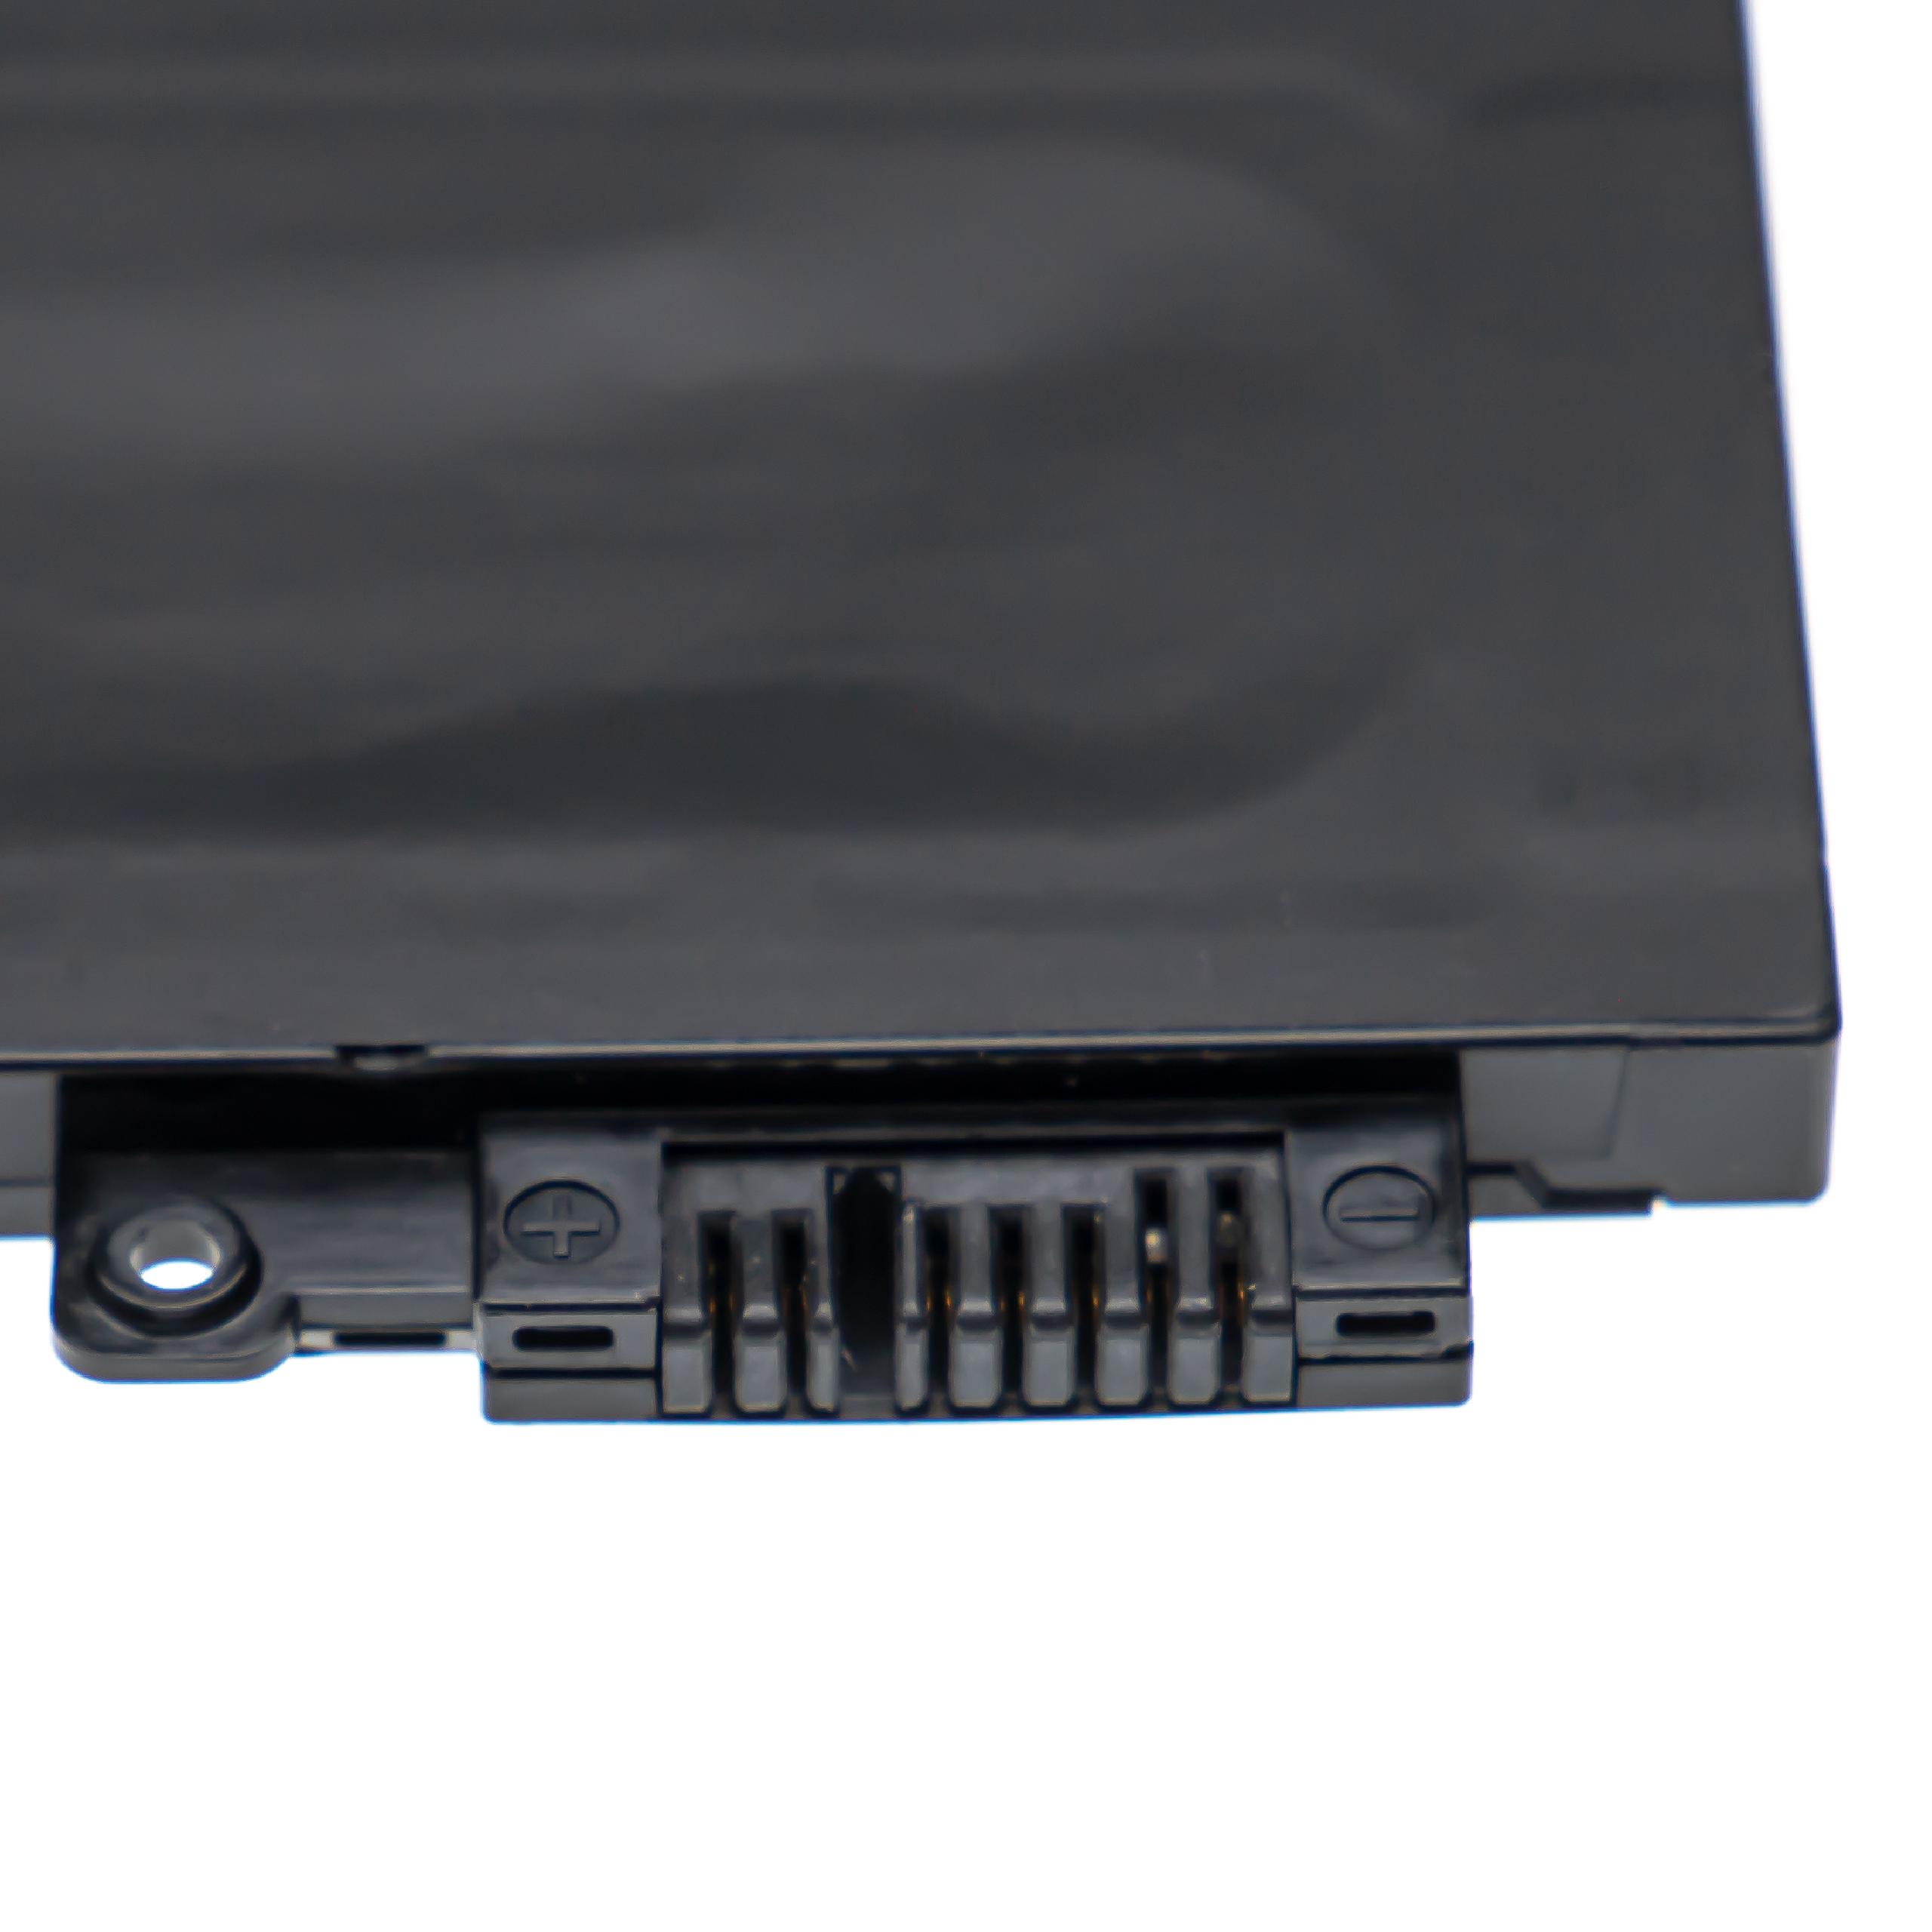 Batterie remplace Lenovo 00HW023, 00HW024, 00HW022 pour ordinateur portable - 2000mAh 11,4V Li-polymère, noir